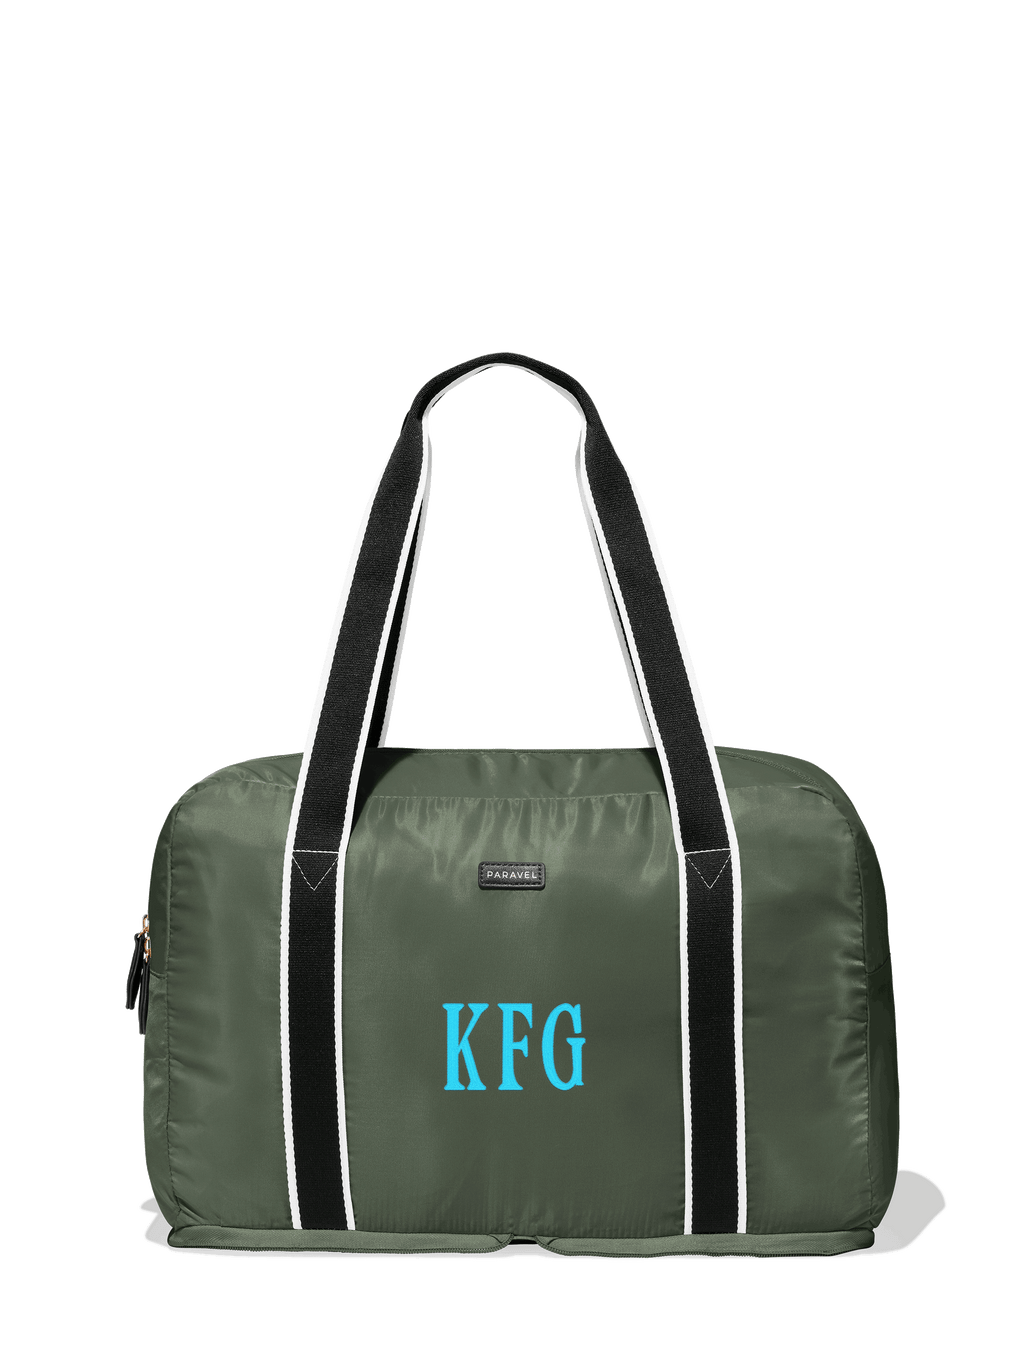 Personalized Garment Bags - Block Monogram